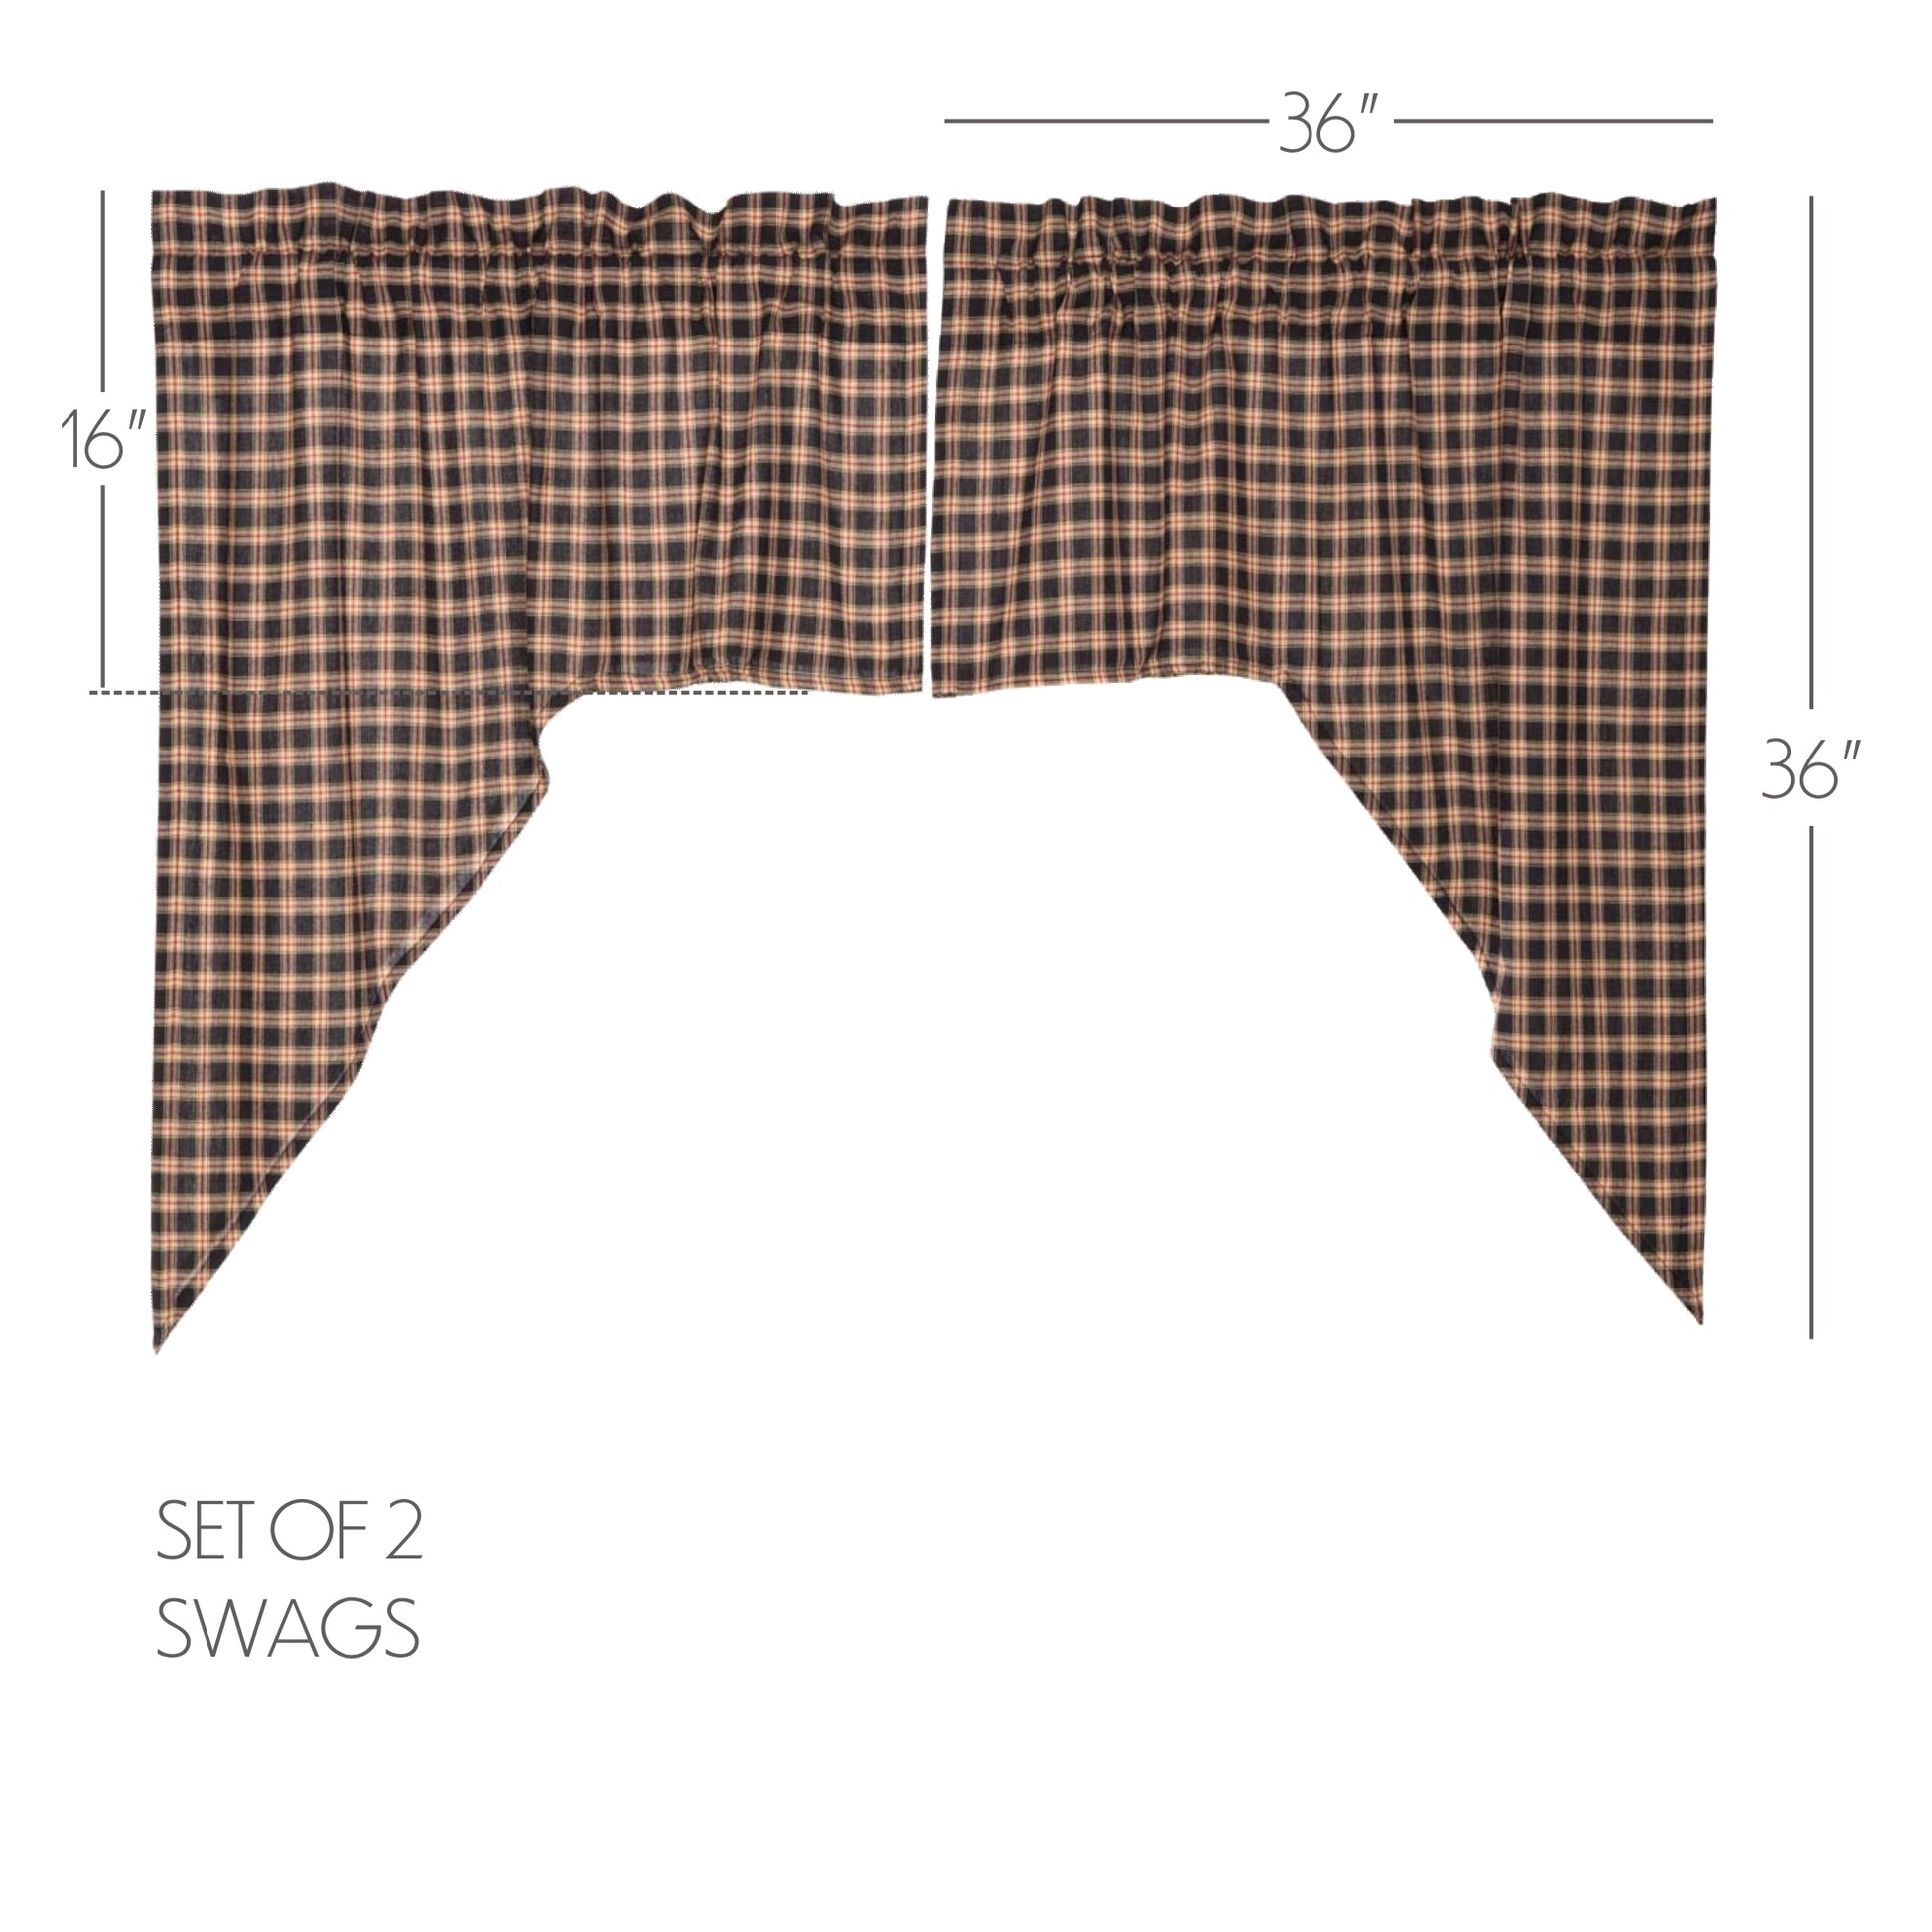 5933-Bingham-Star-Swag-Plaid-Set-of-2-36x36x16-image-1